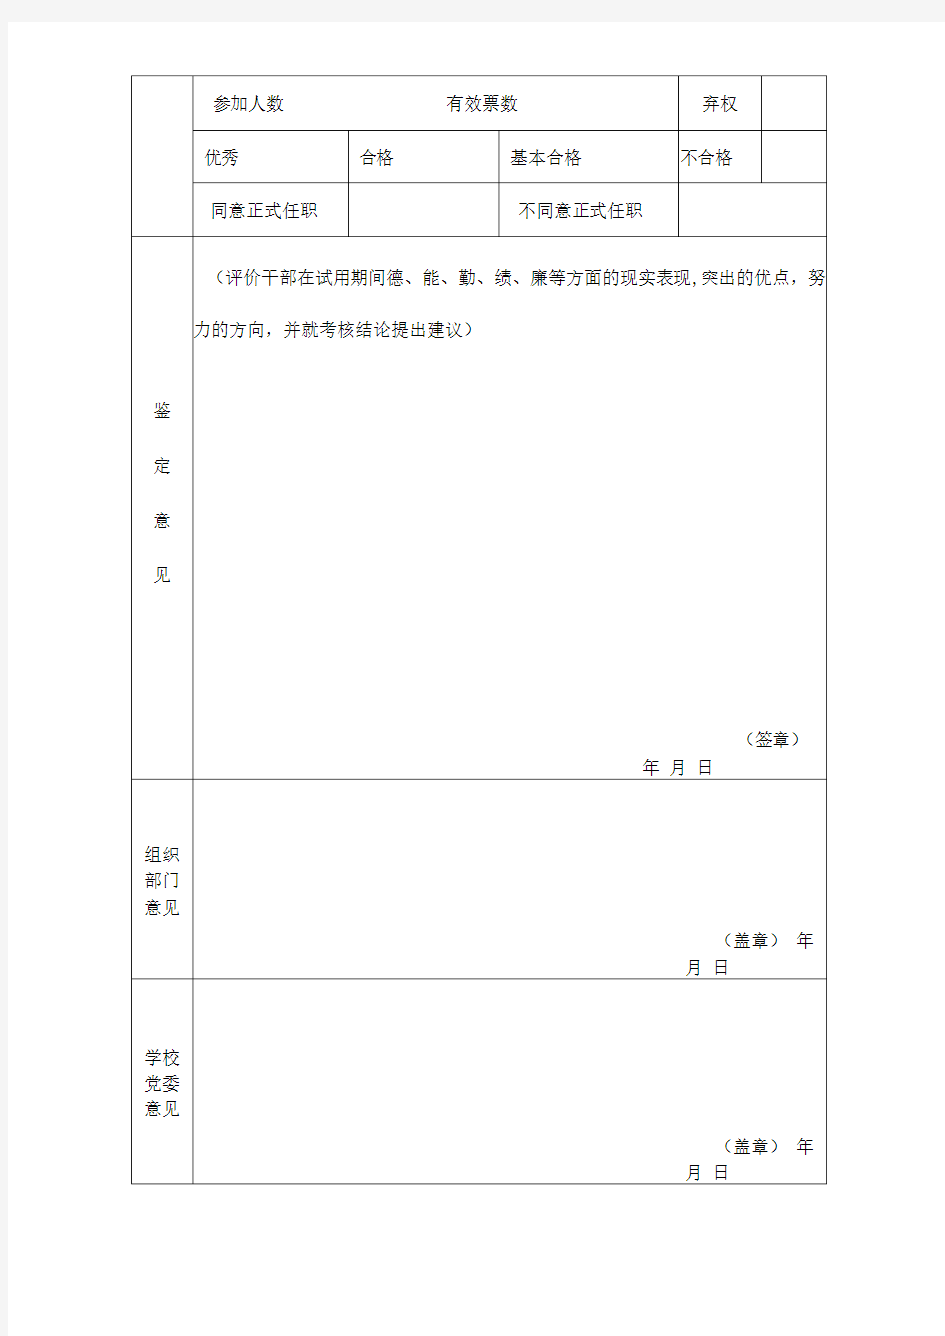 华南农业大学领导干部任职试用期满考核表